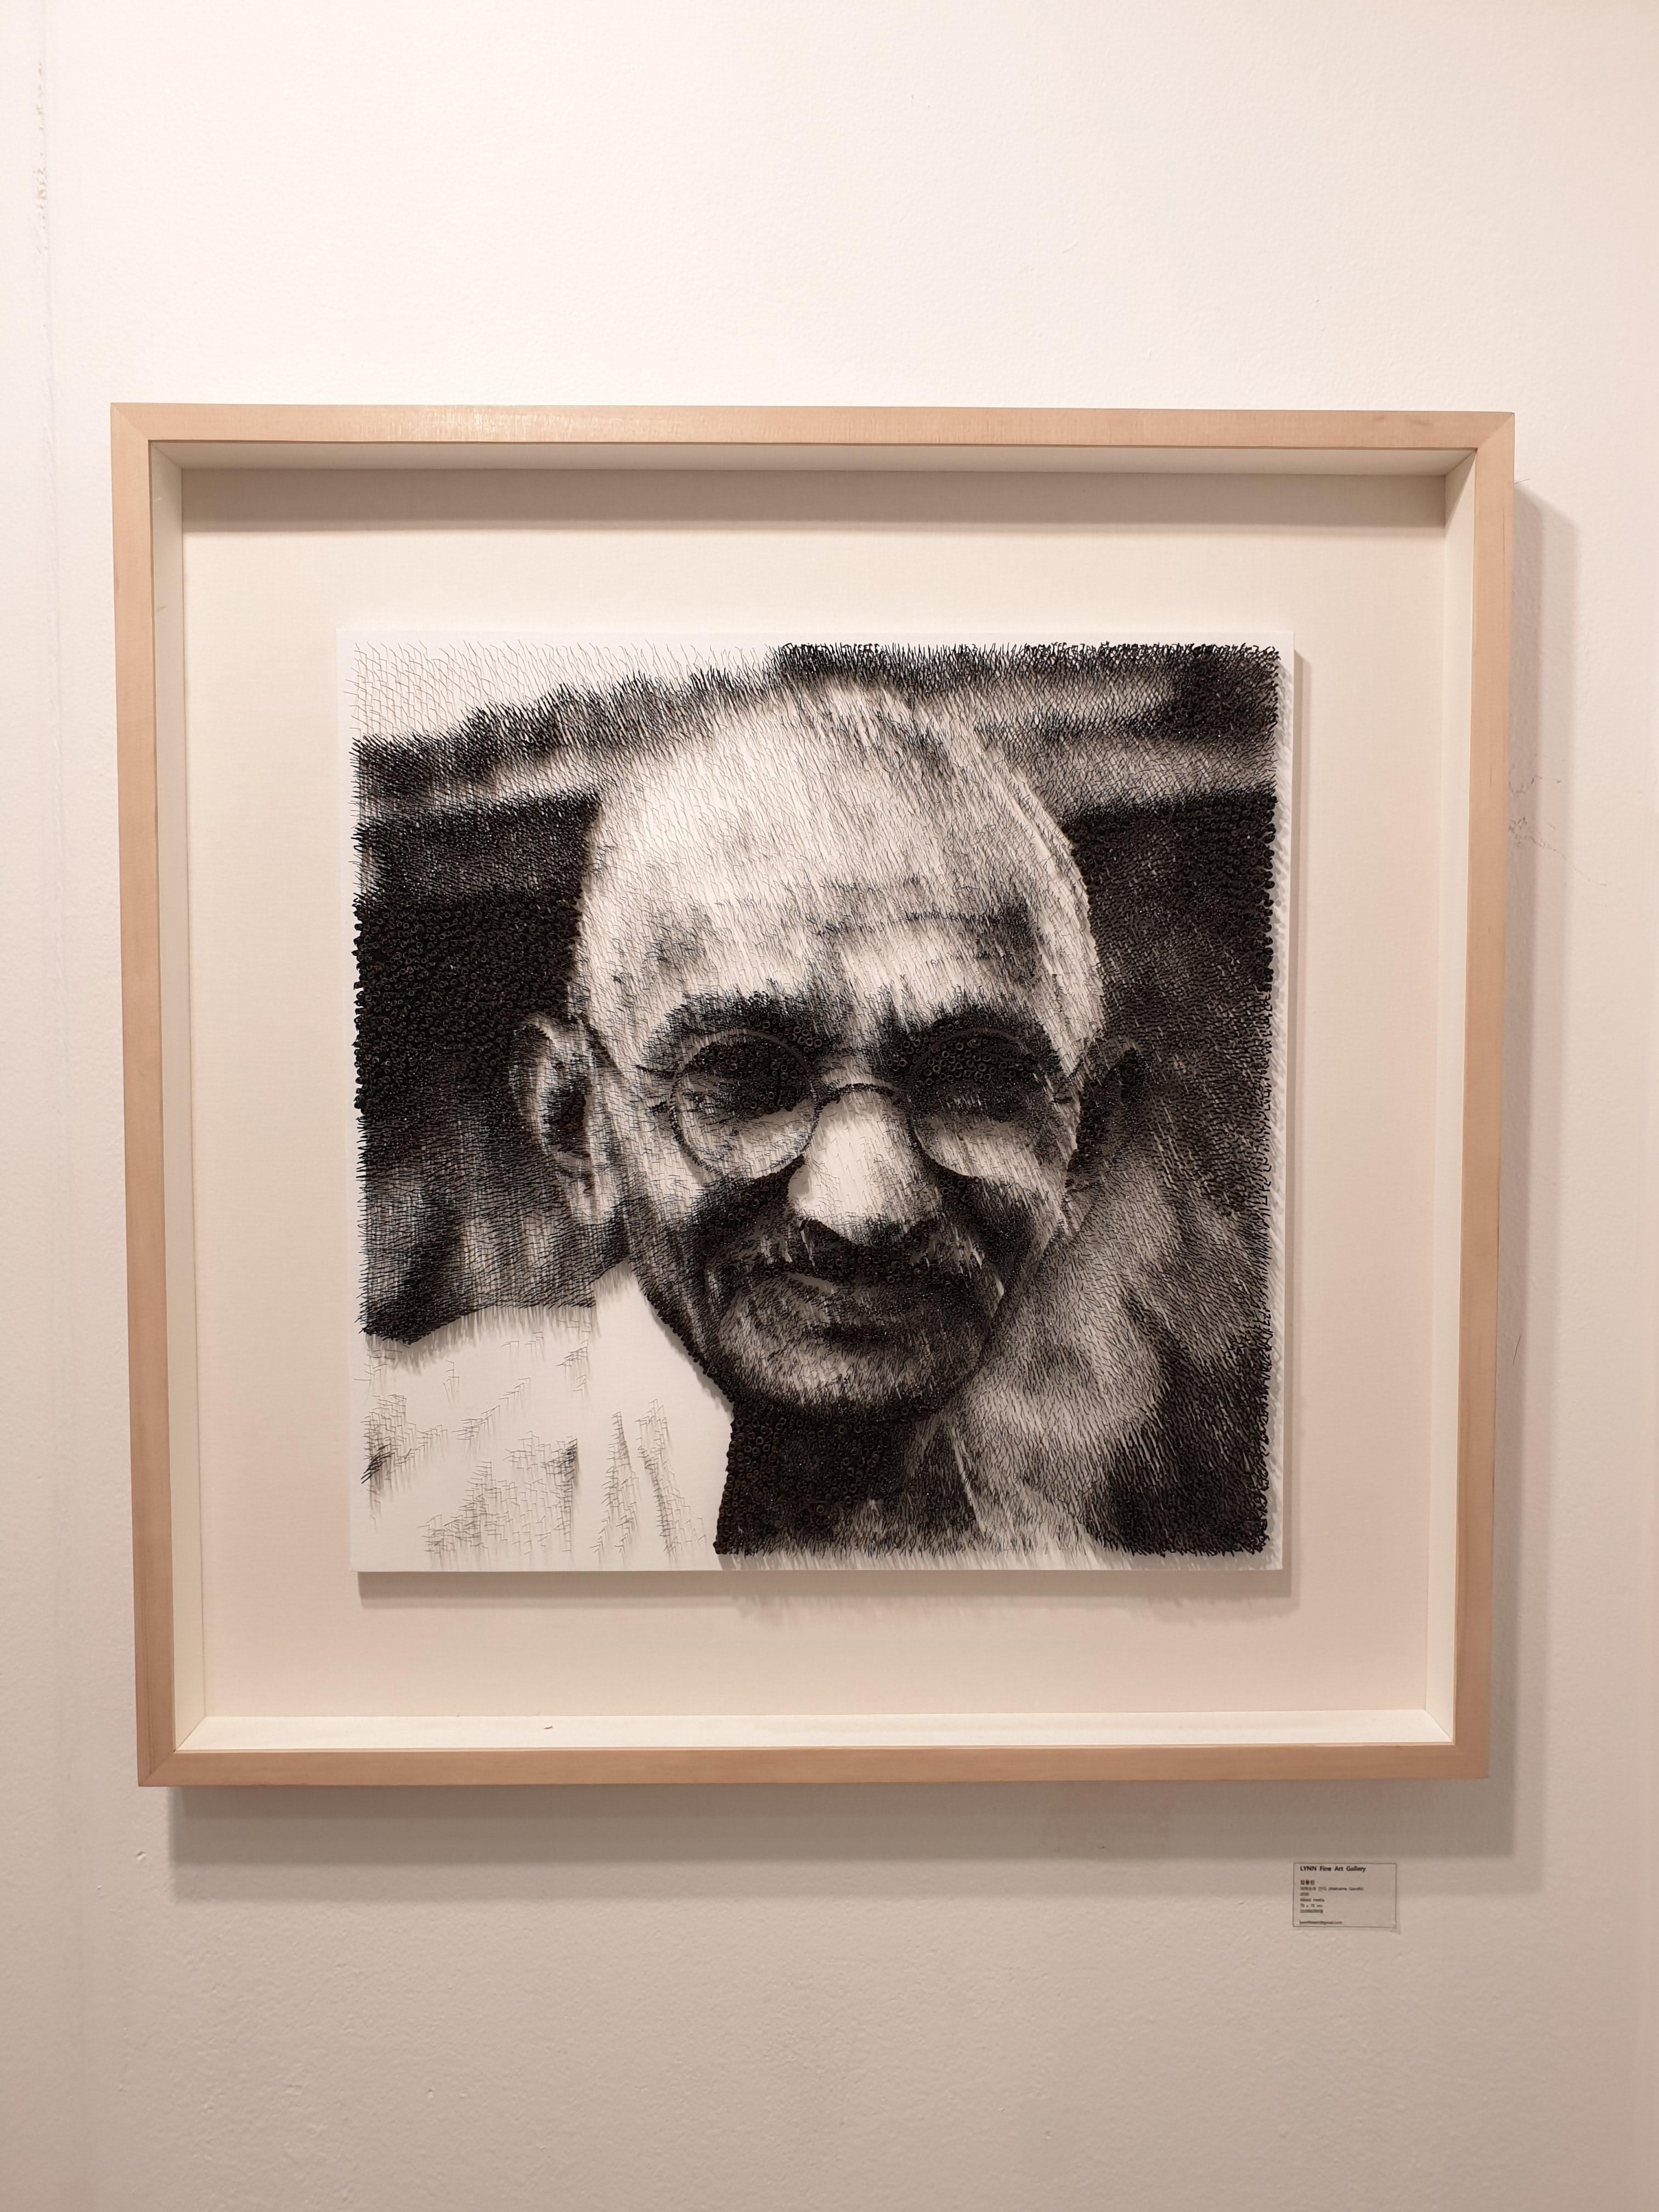 Mohandas Gandhi[Schwarz-Weiß, Stahl auf Leinwand, Stereoskop, Porträt, neue Medien] (Medienkunst), Mixed Media Art, von Kim Yong Jin